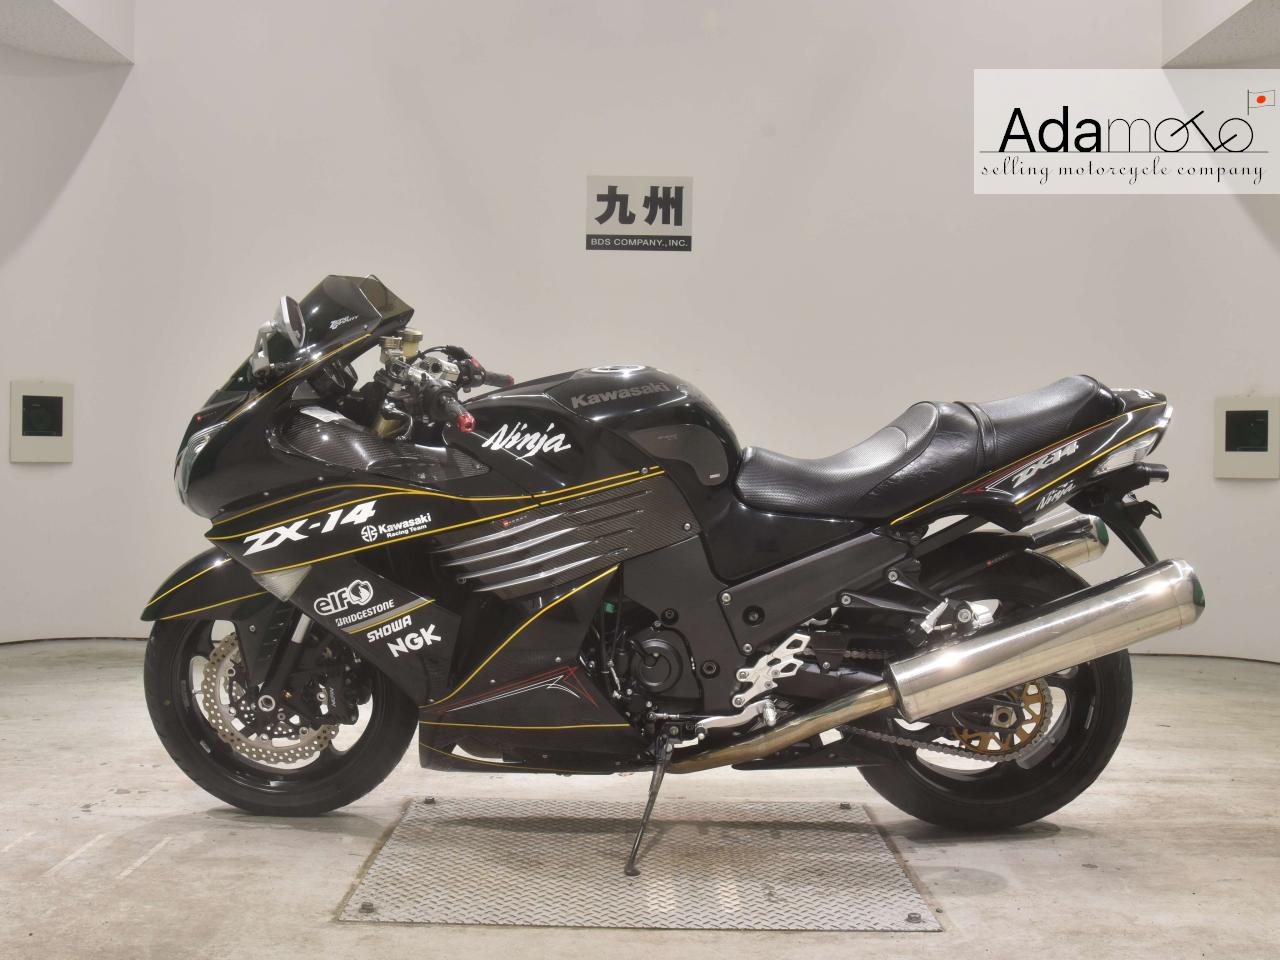 Kawasaki ZX 14 - Adamoto - Motorcycles from Japan